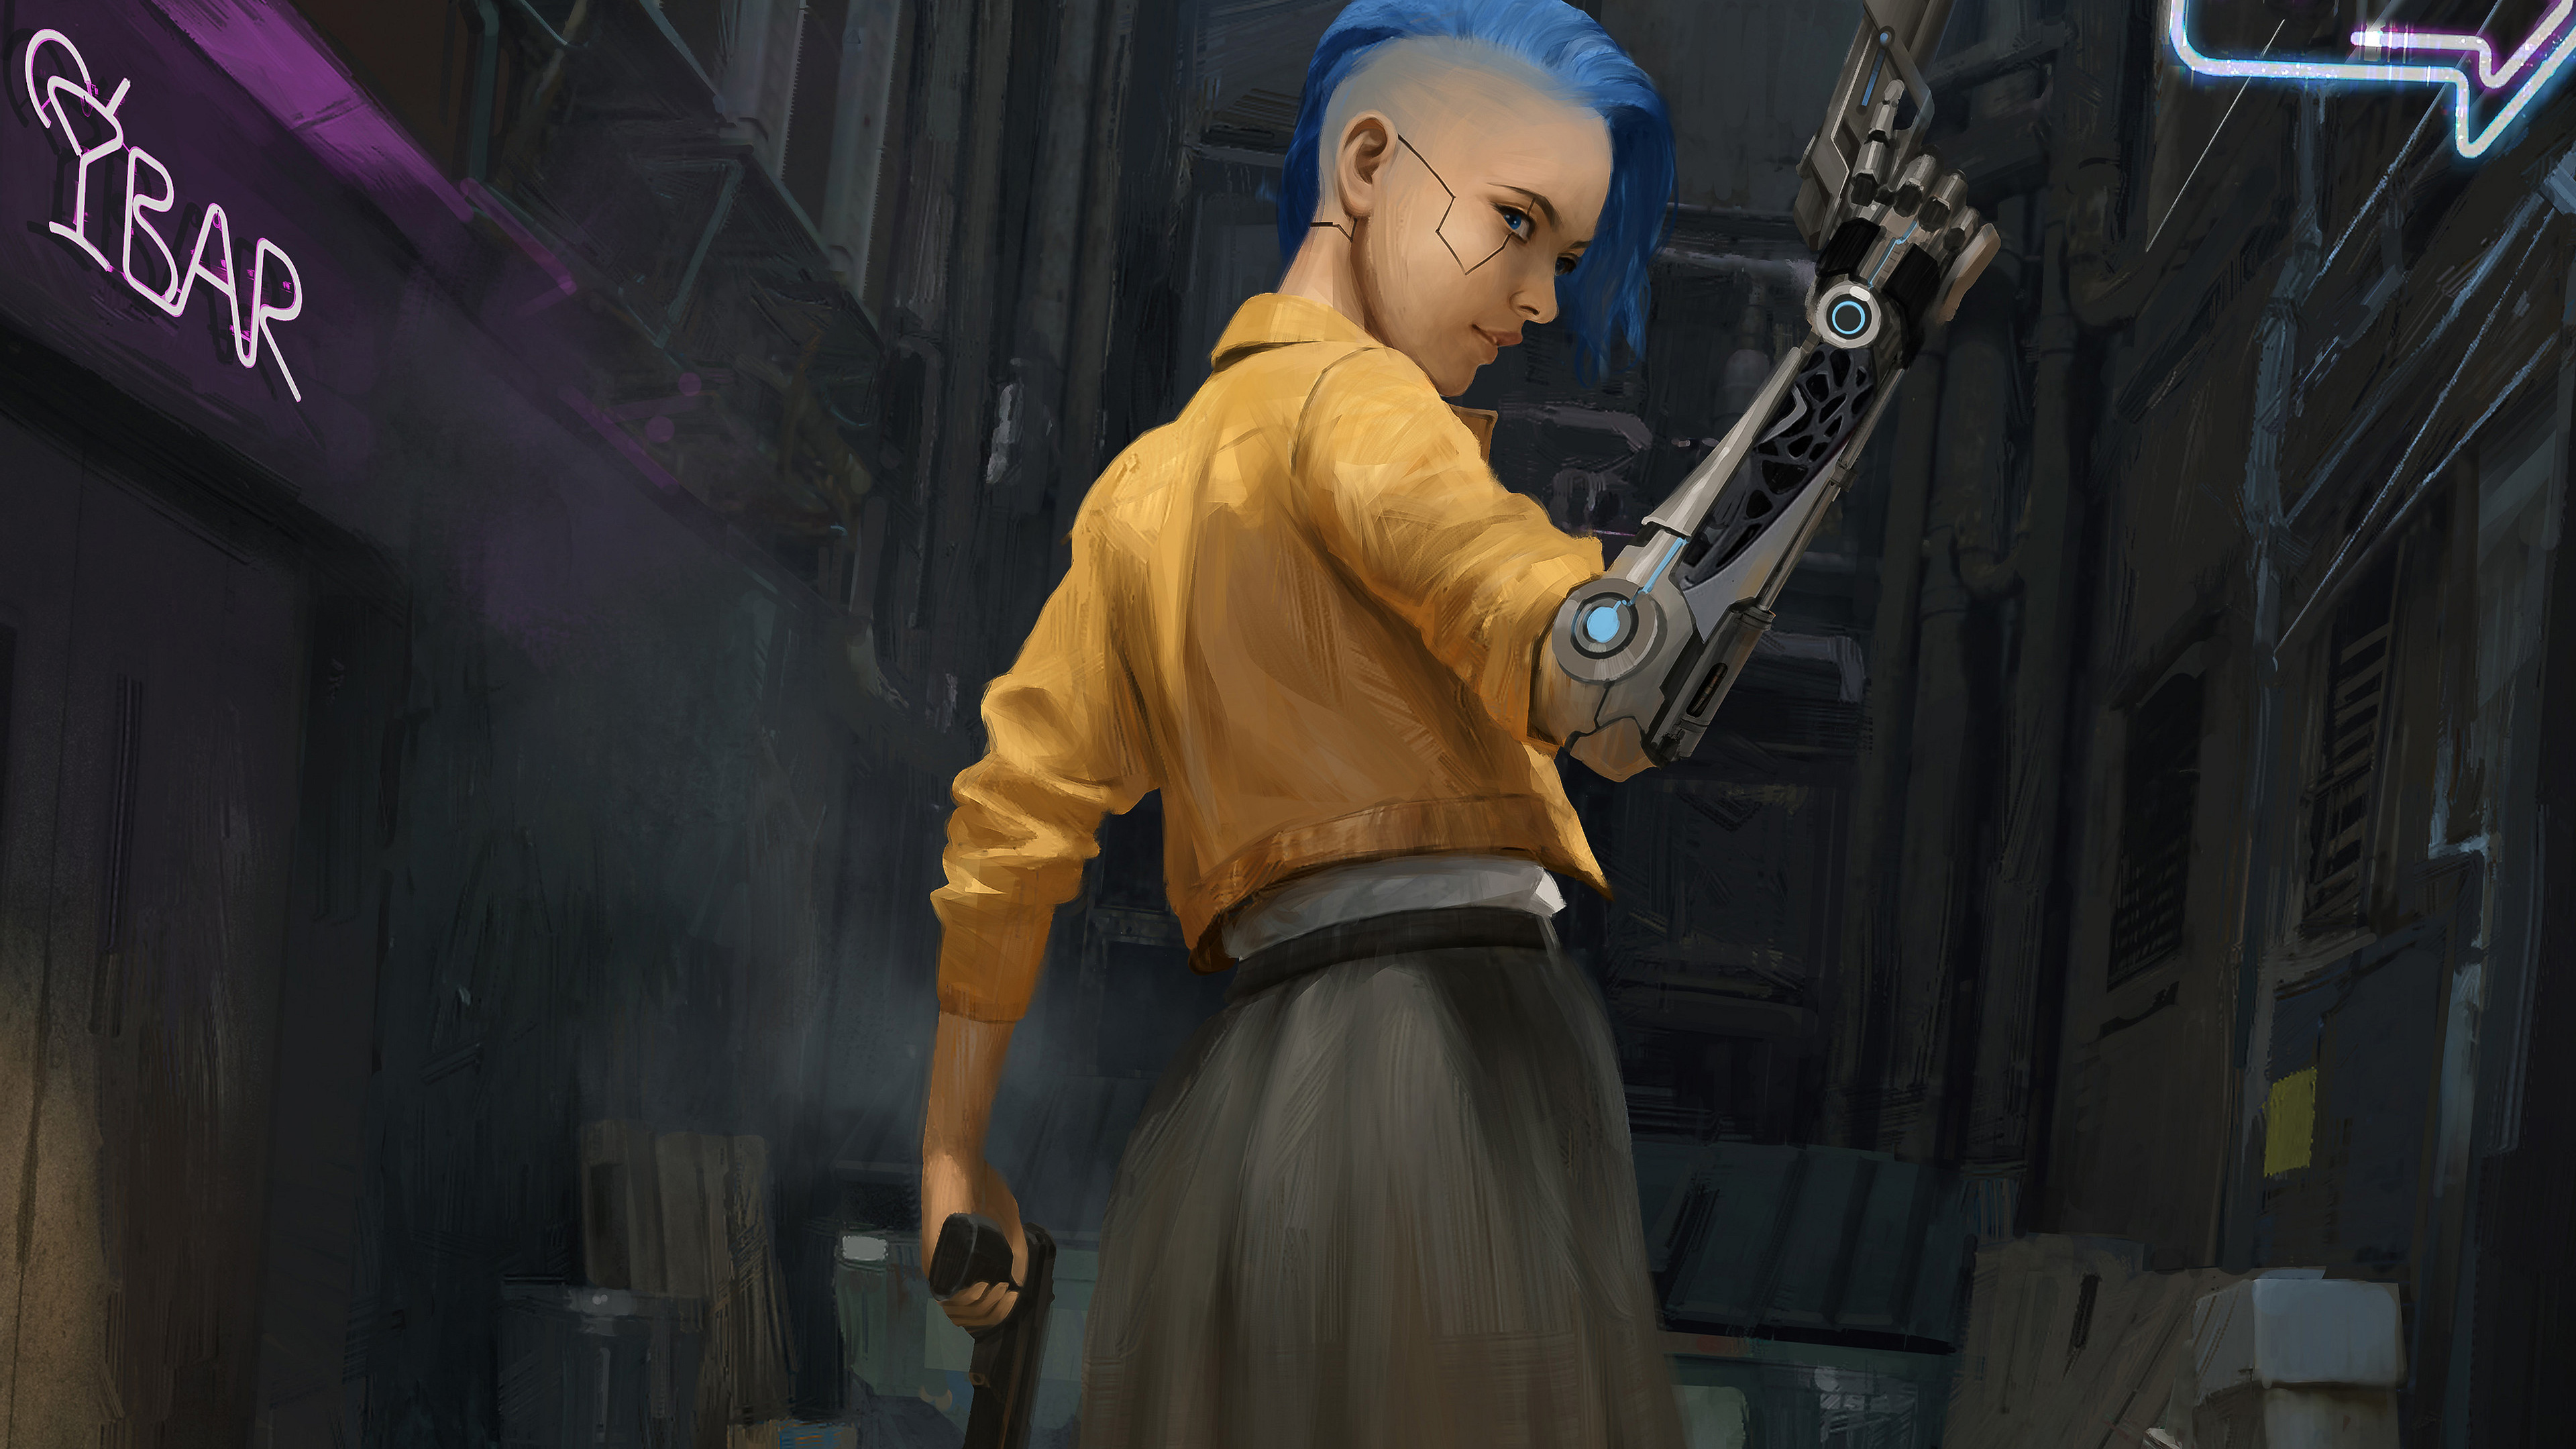 Blue Hair Cyberpunk Futuristic Girl Gun Weapon Woman 3840x2160